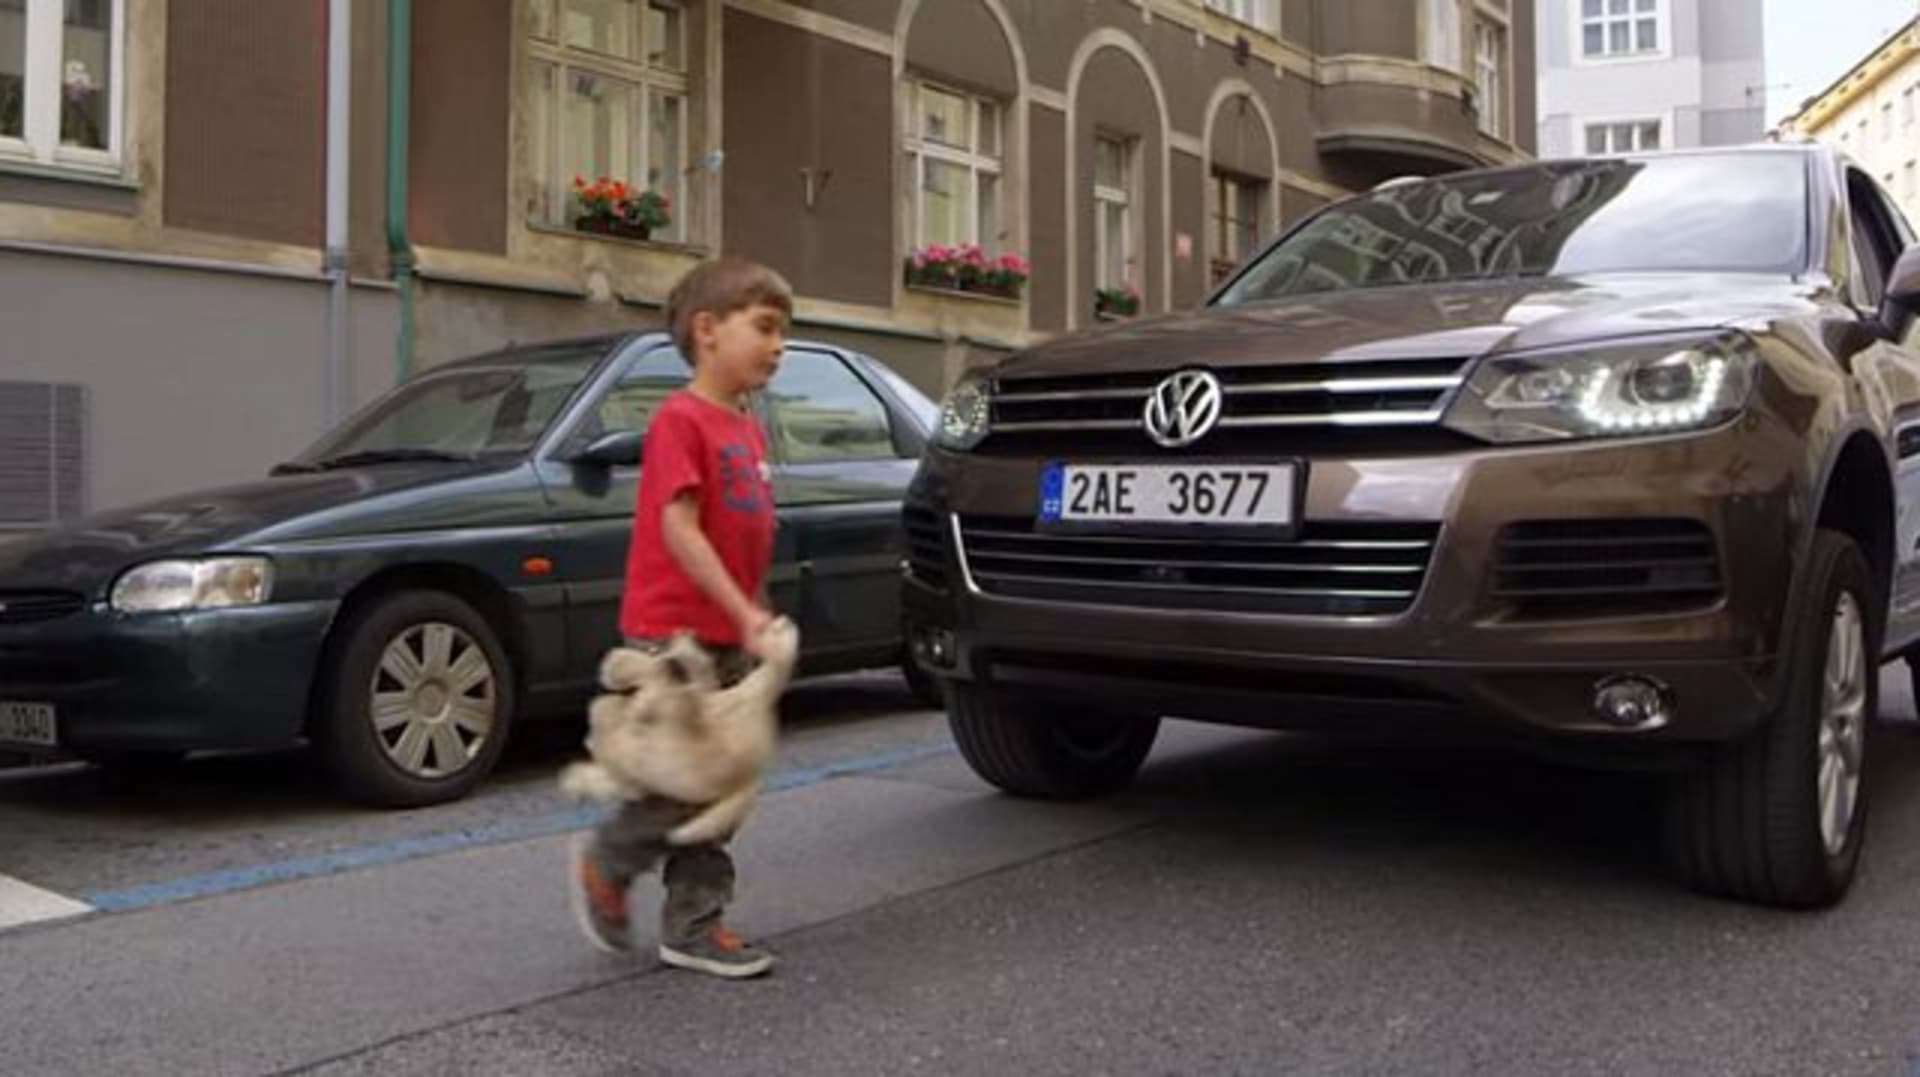 Nekupujte hloupá SUV, vyzývá Praha v nesmyslné kampani